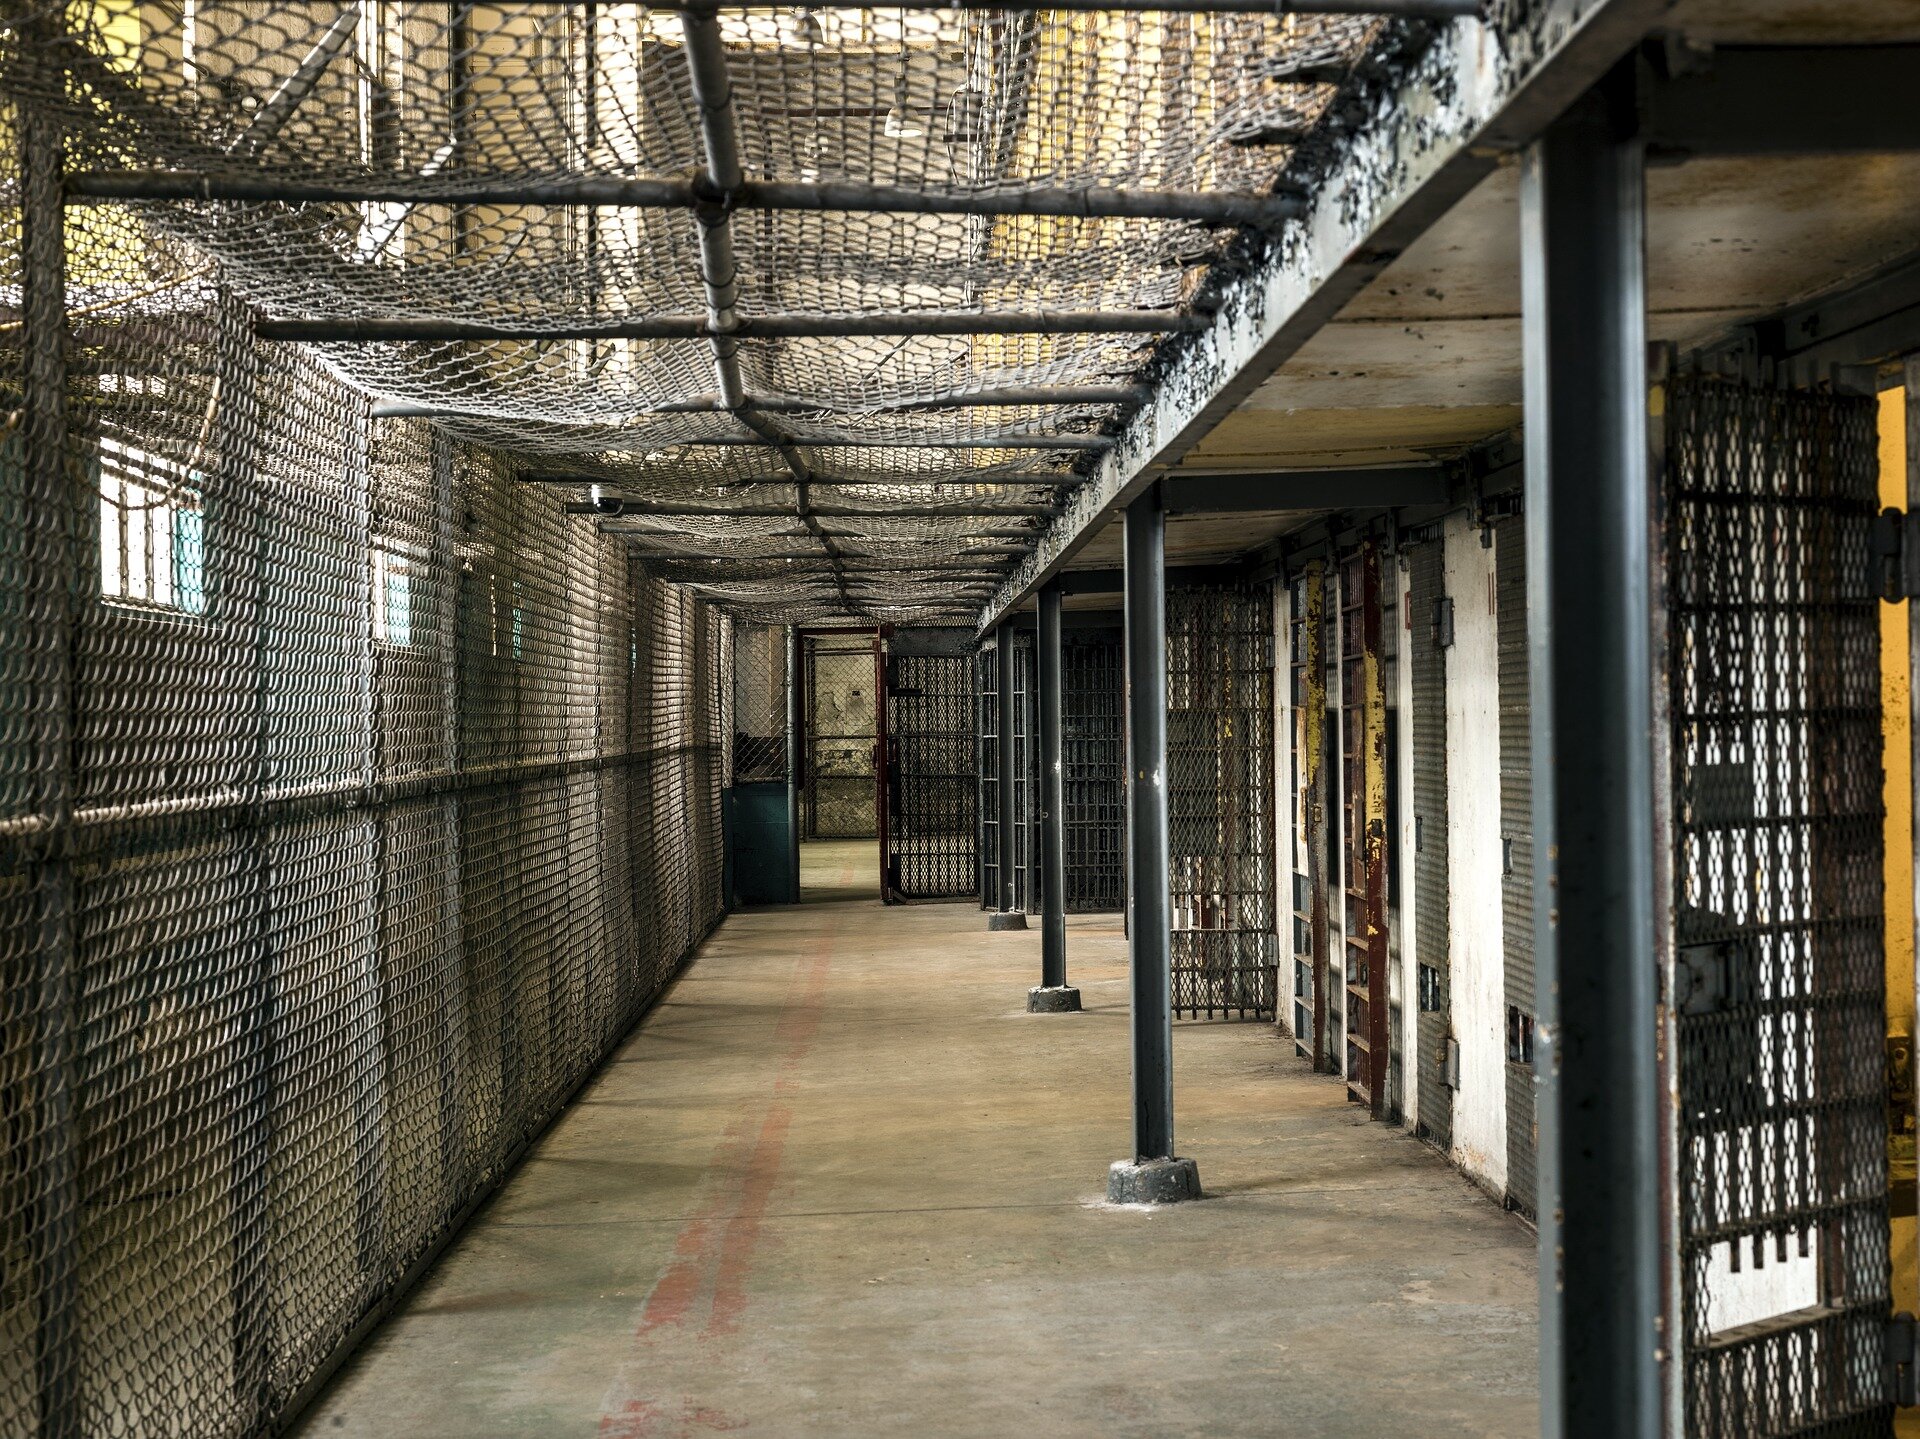 Zdjęcie przedstawia wnętrze więziennego korytarza. Po prawej stronie znajdują się wejścia do cel. Korytarz zabezpieczony jest z lewej strony i od góry gęstą siatką. 